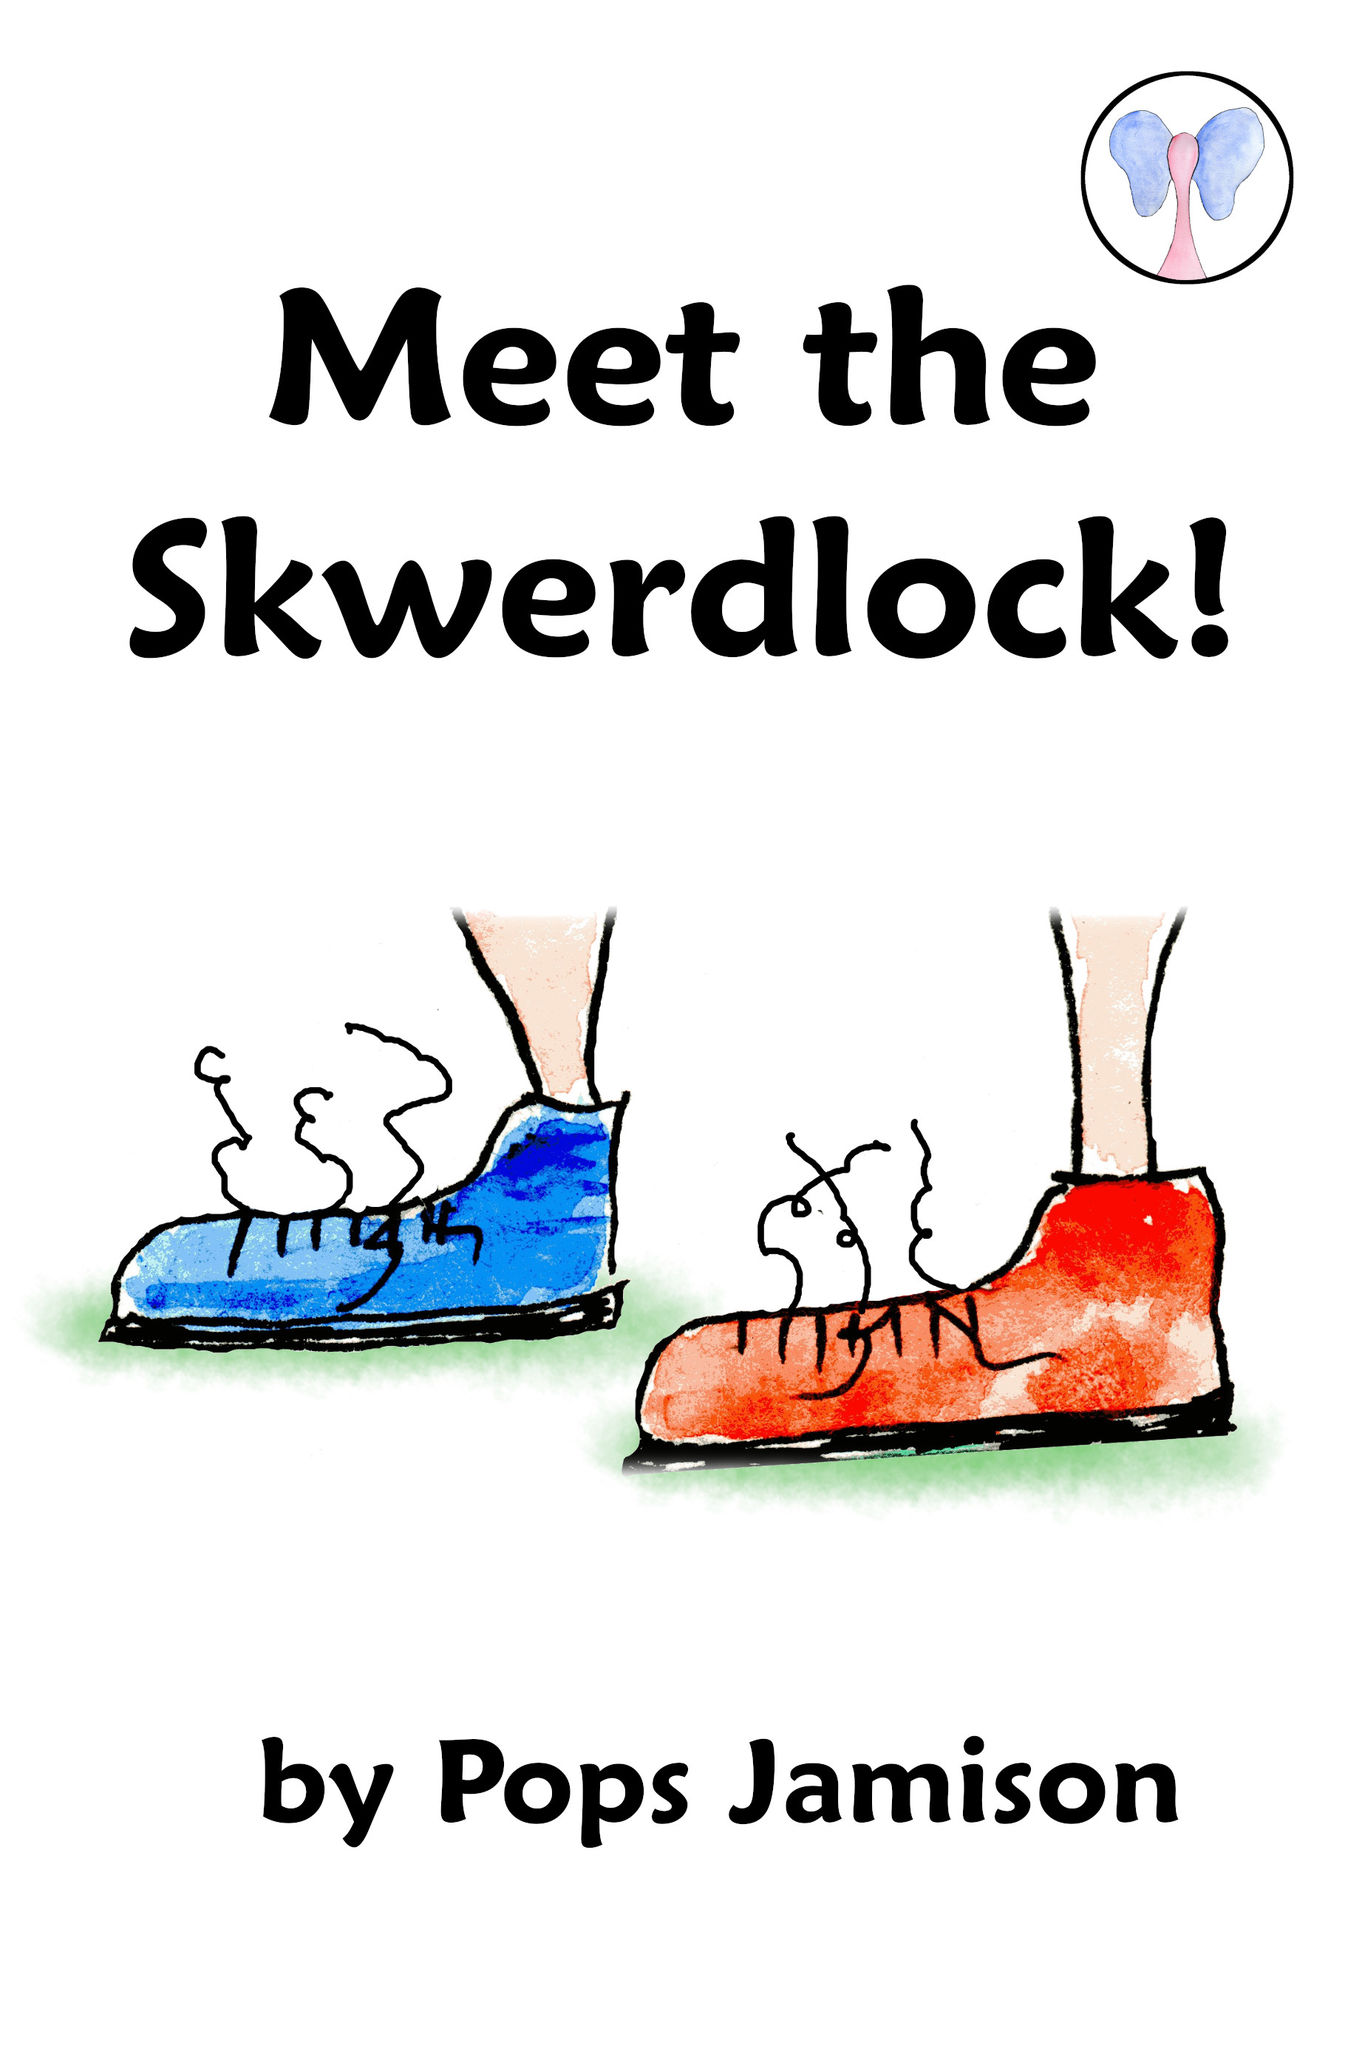 Meet the Skwerdlock!